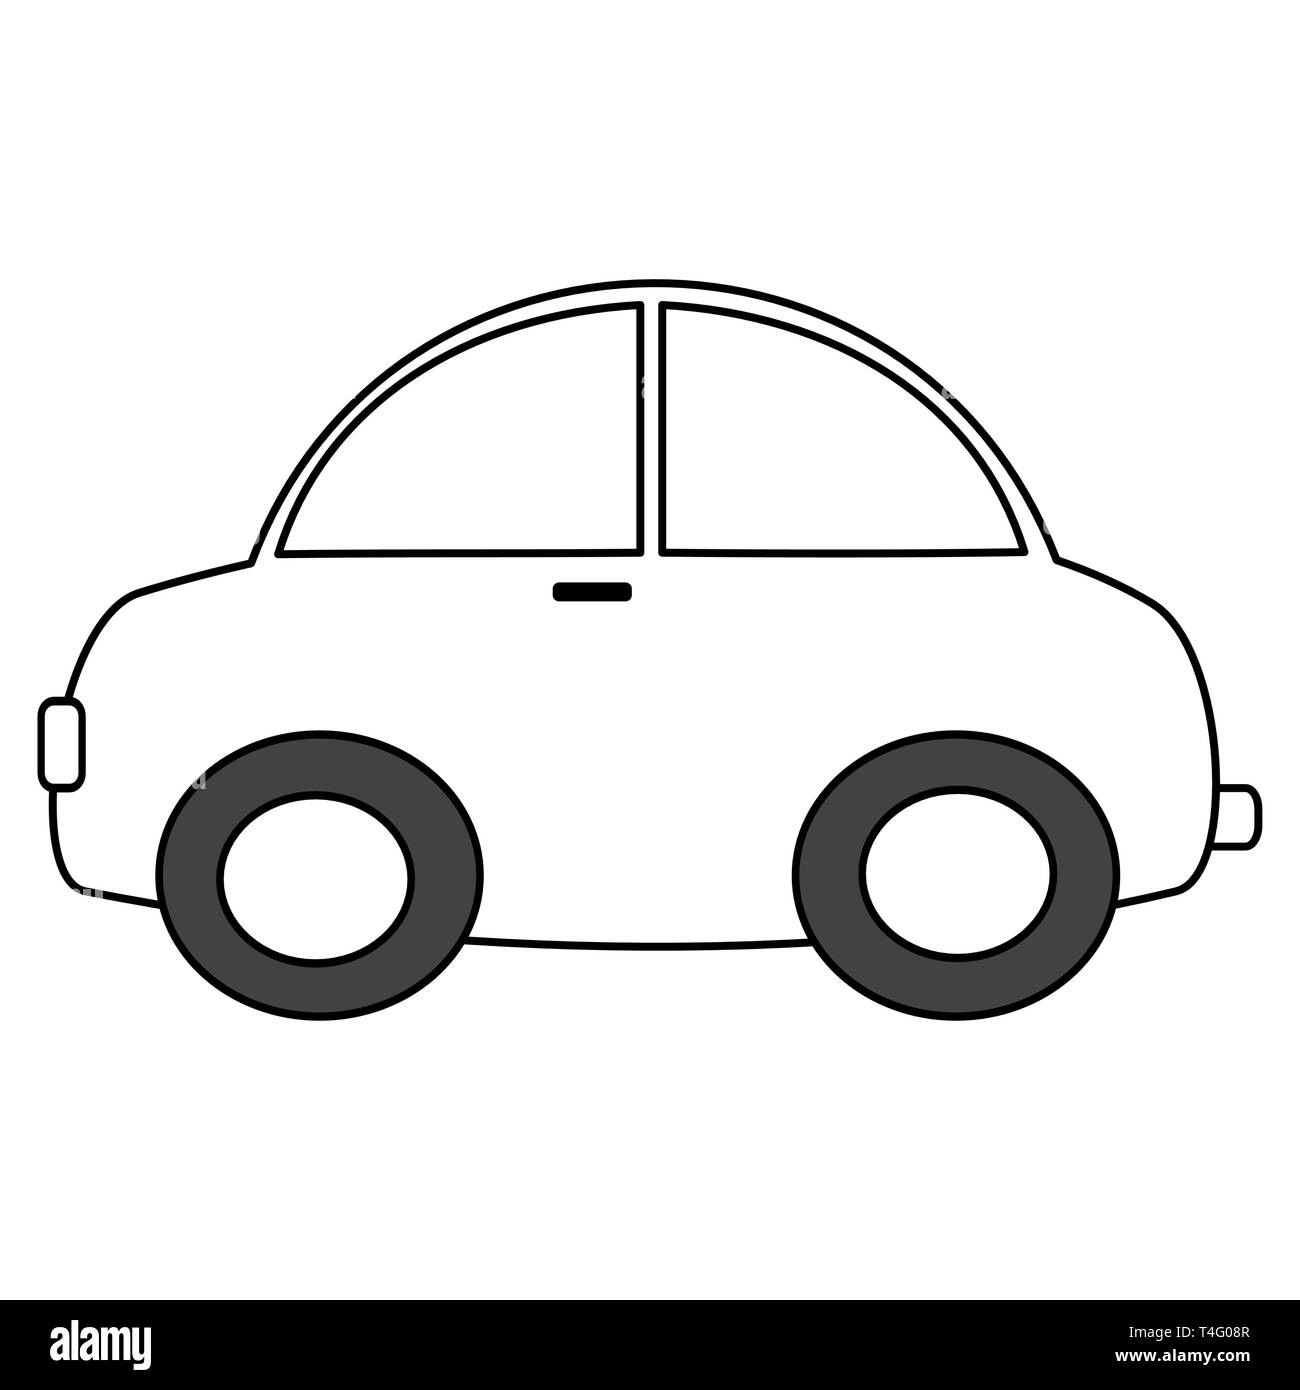 Noir et blanc voiture cartoon vector illustration pour l'art à colorier  Image Vectorielle Stock - Alamy